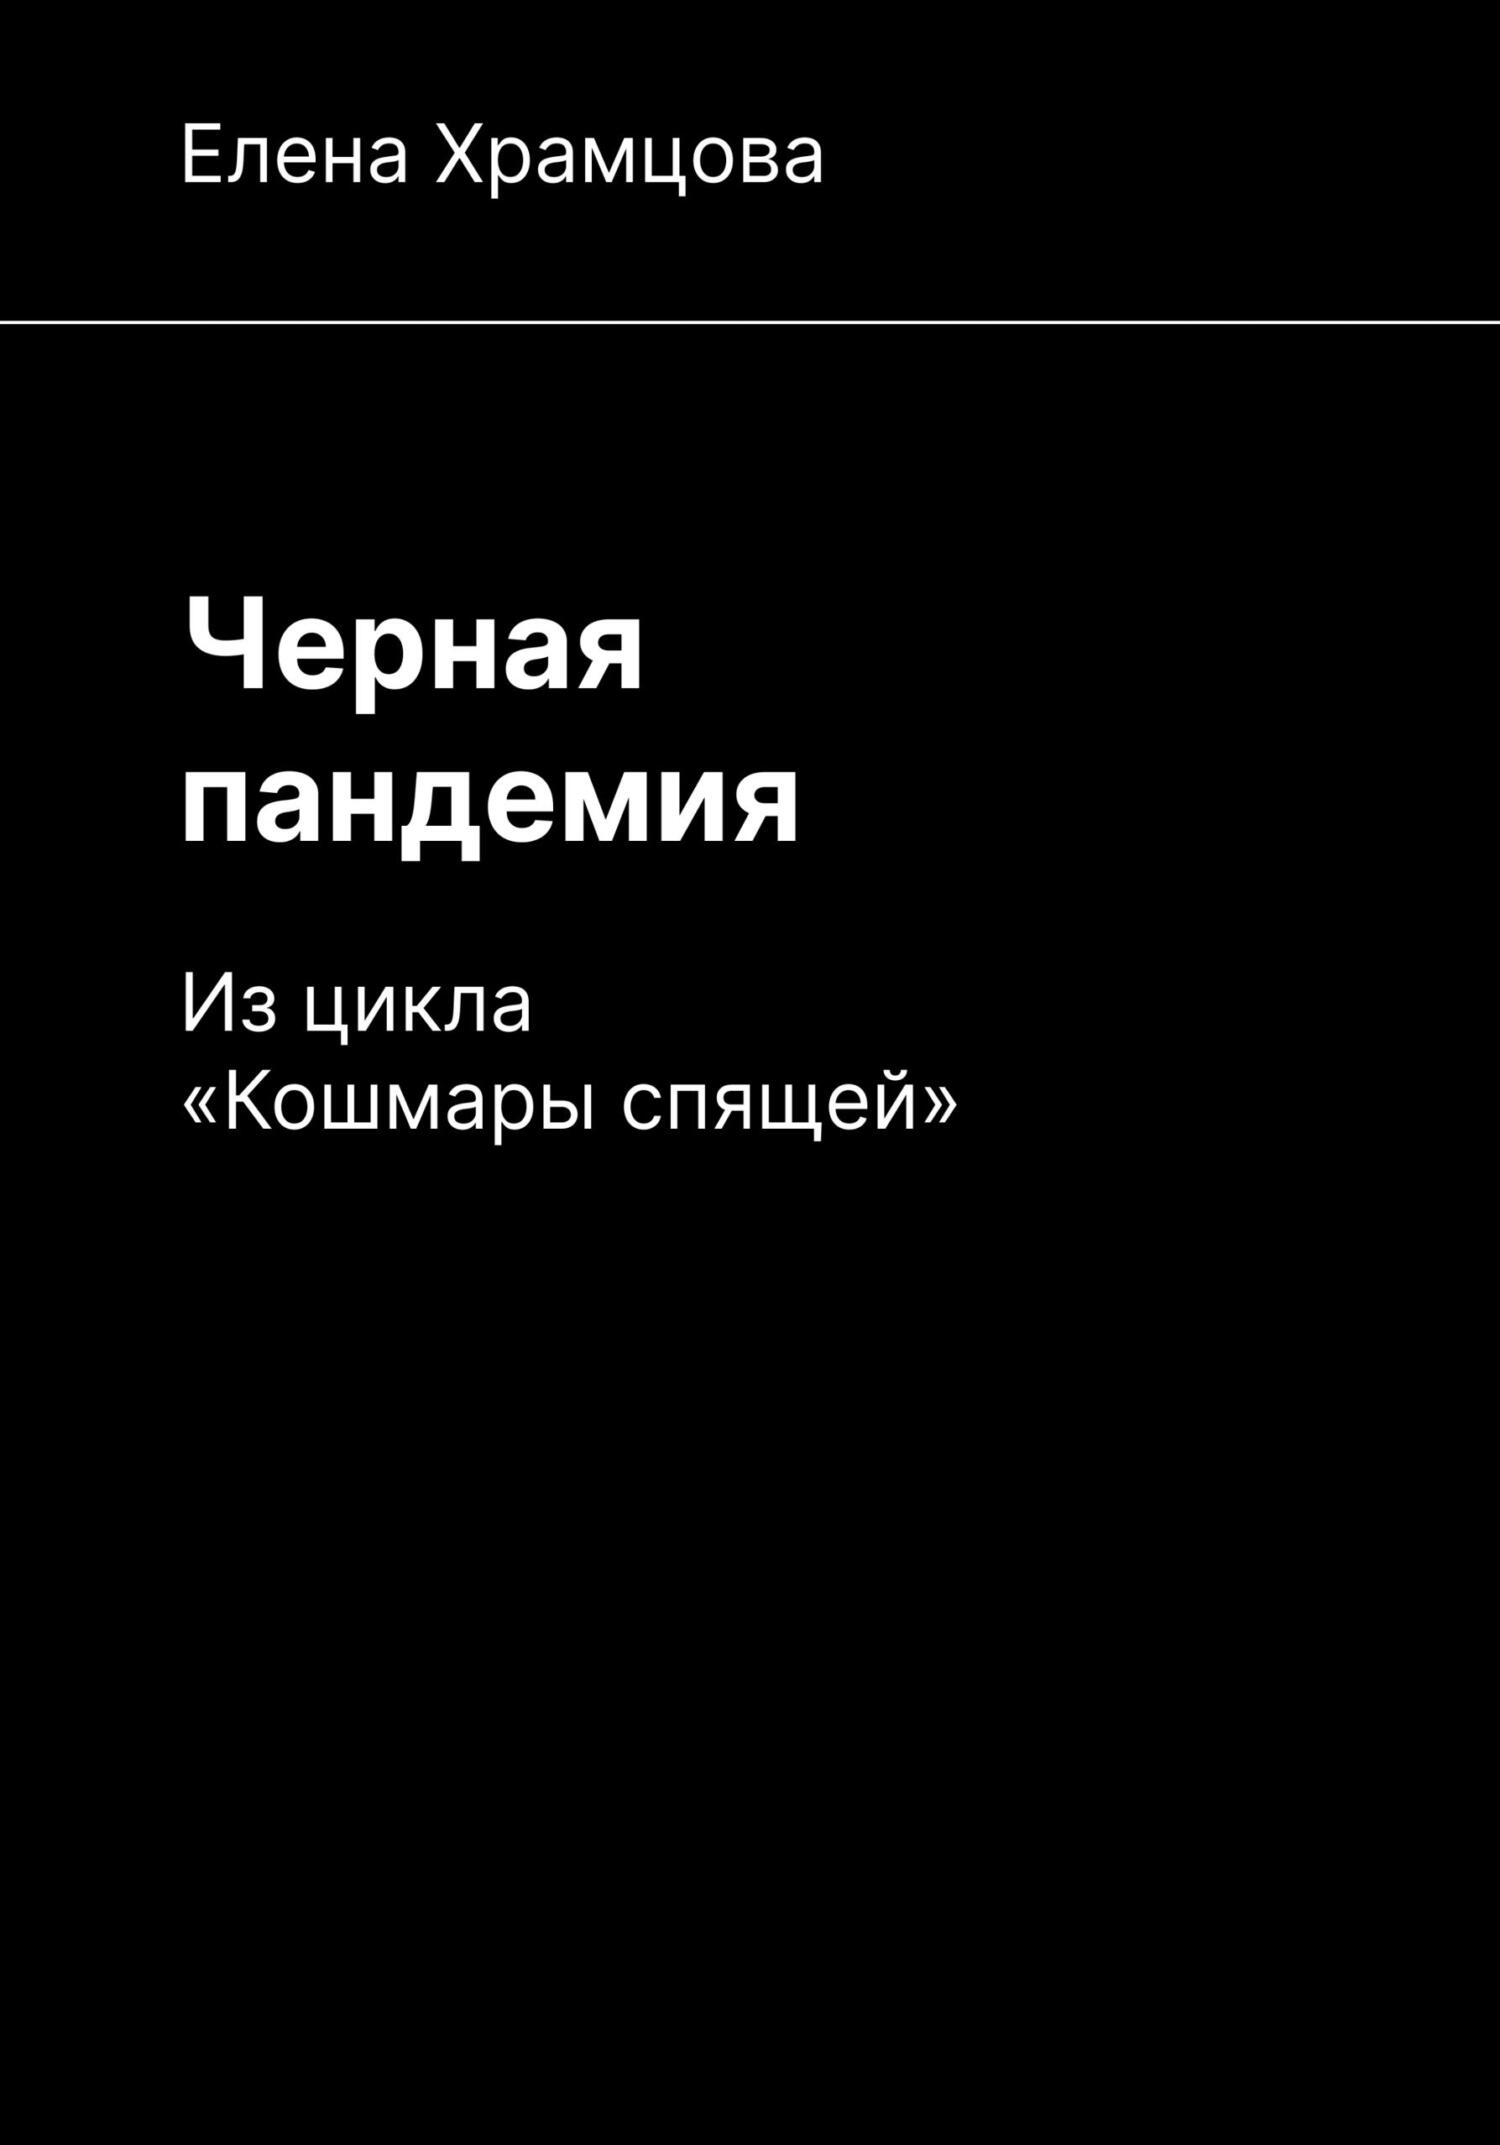 Черная пандемия - Елена Храмцова